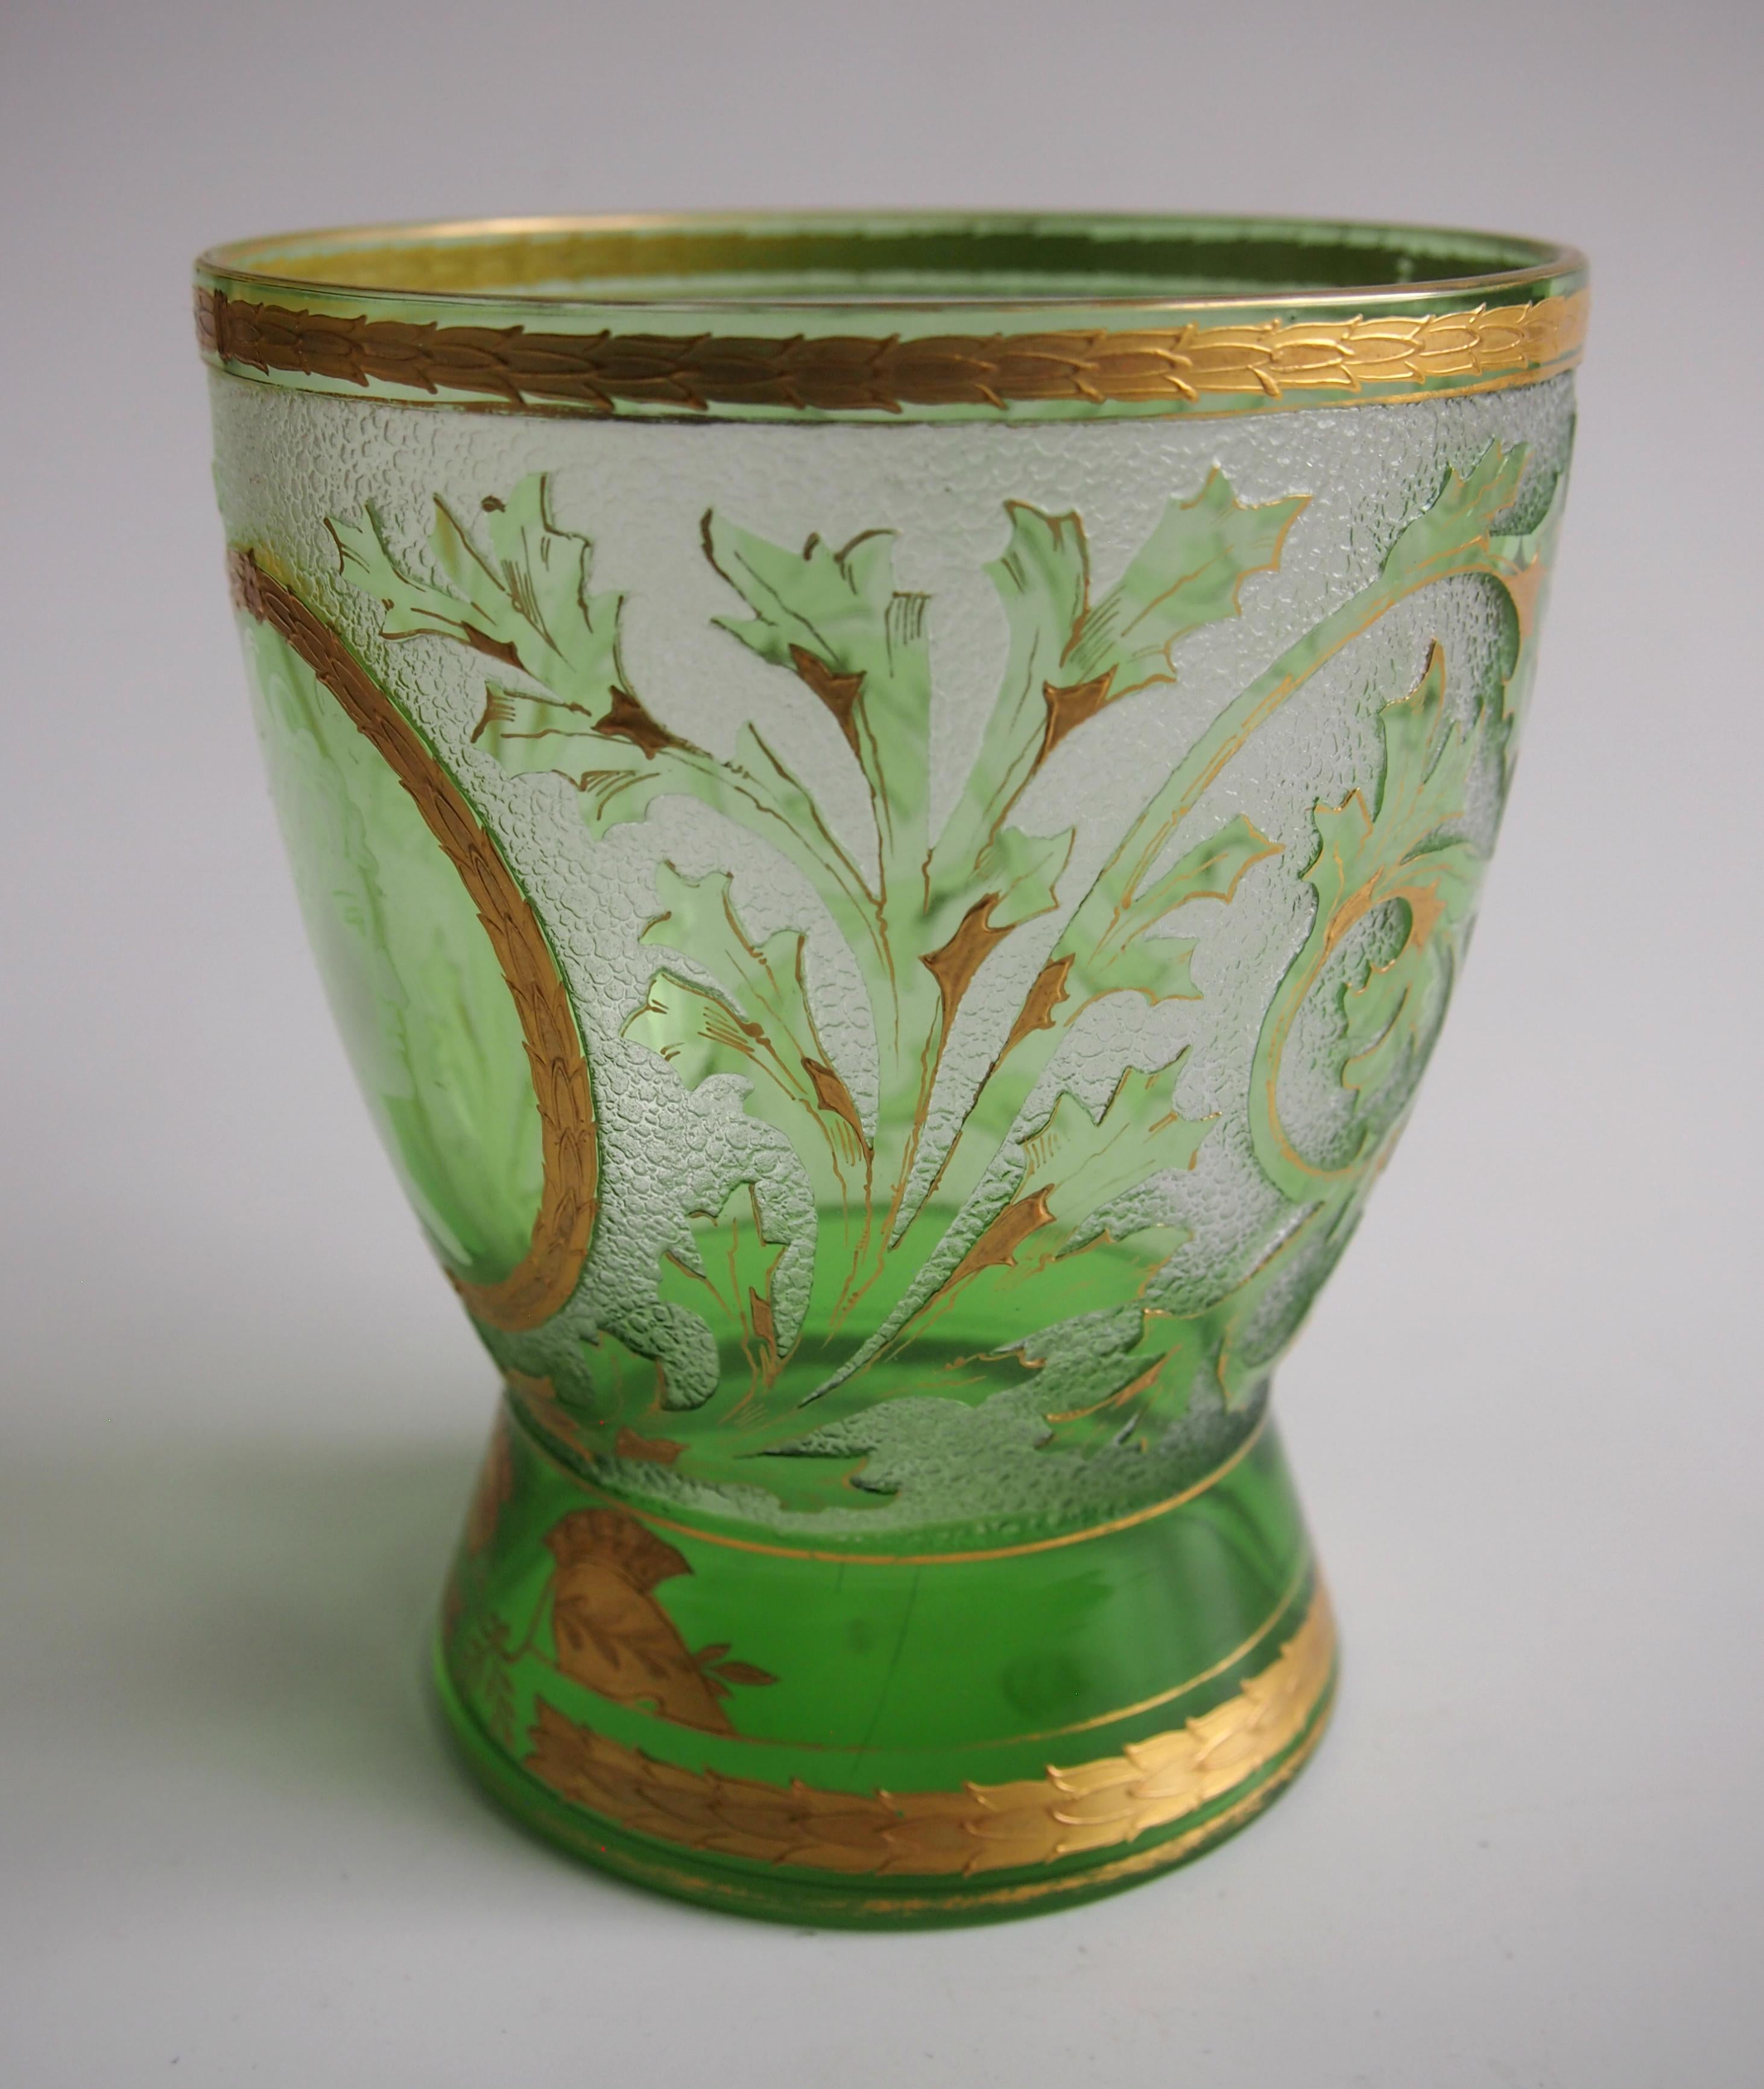 Wunderschöne Riedel Kamee und vergoldet, grün auf klar - 'Helm' Vase. Der Korpus ist mit grünen Blättern und Zweigen verziert, die durch Vergoldung hervorgehoben werden. Es hat ein sehr schönes weißes Profilgesicht einer Dame in einer goldenen